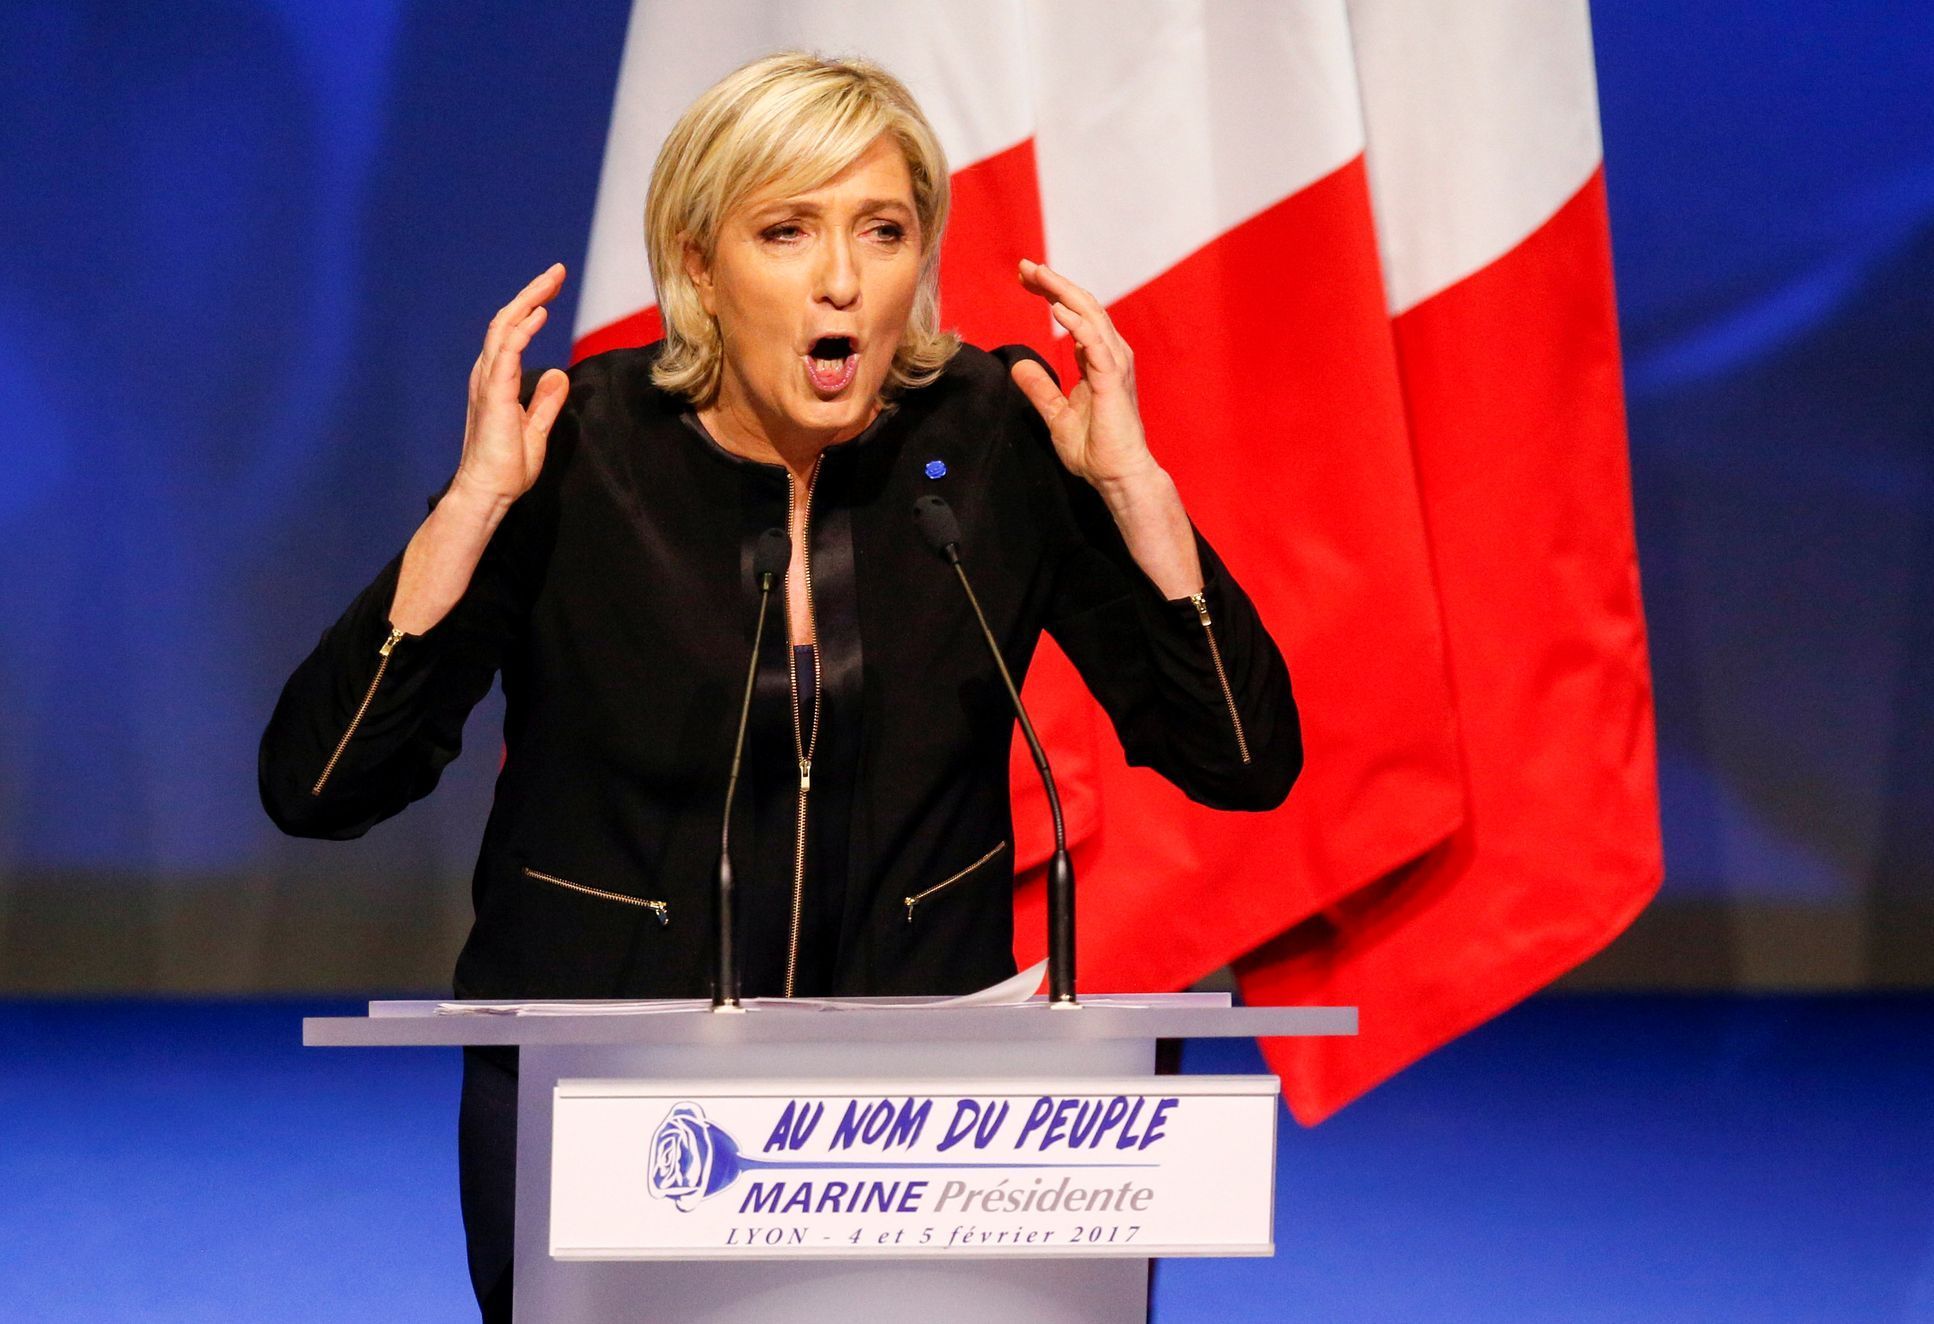 Marine Le Penová, únor 2017